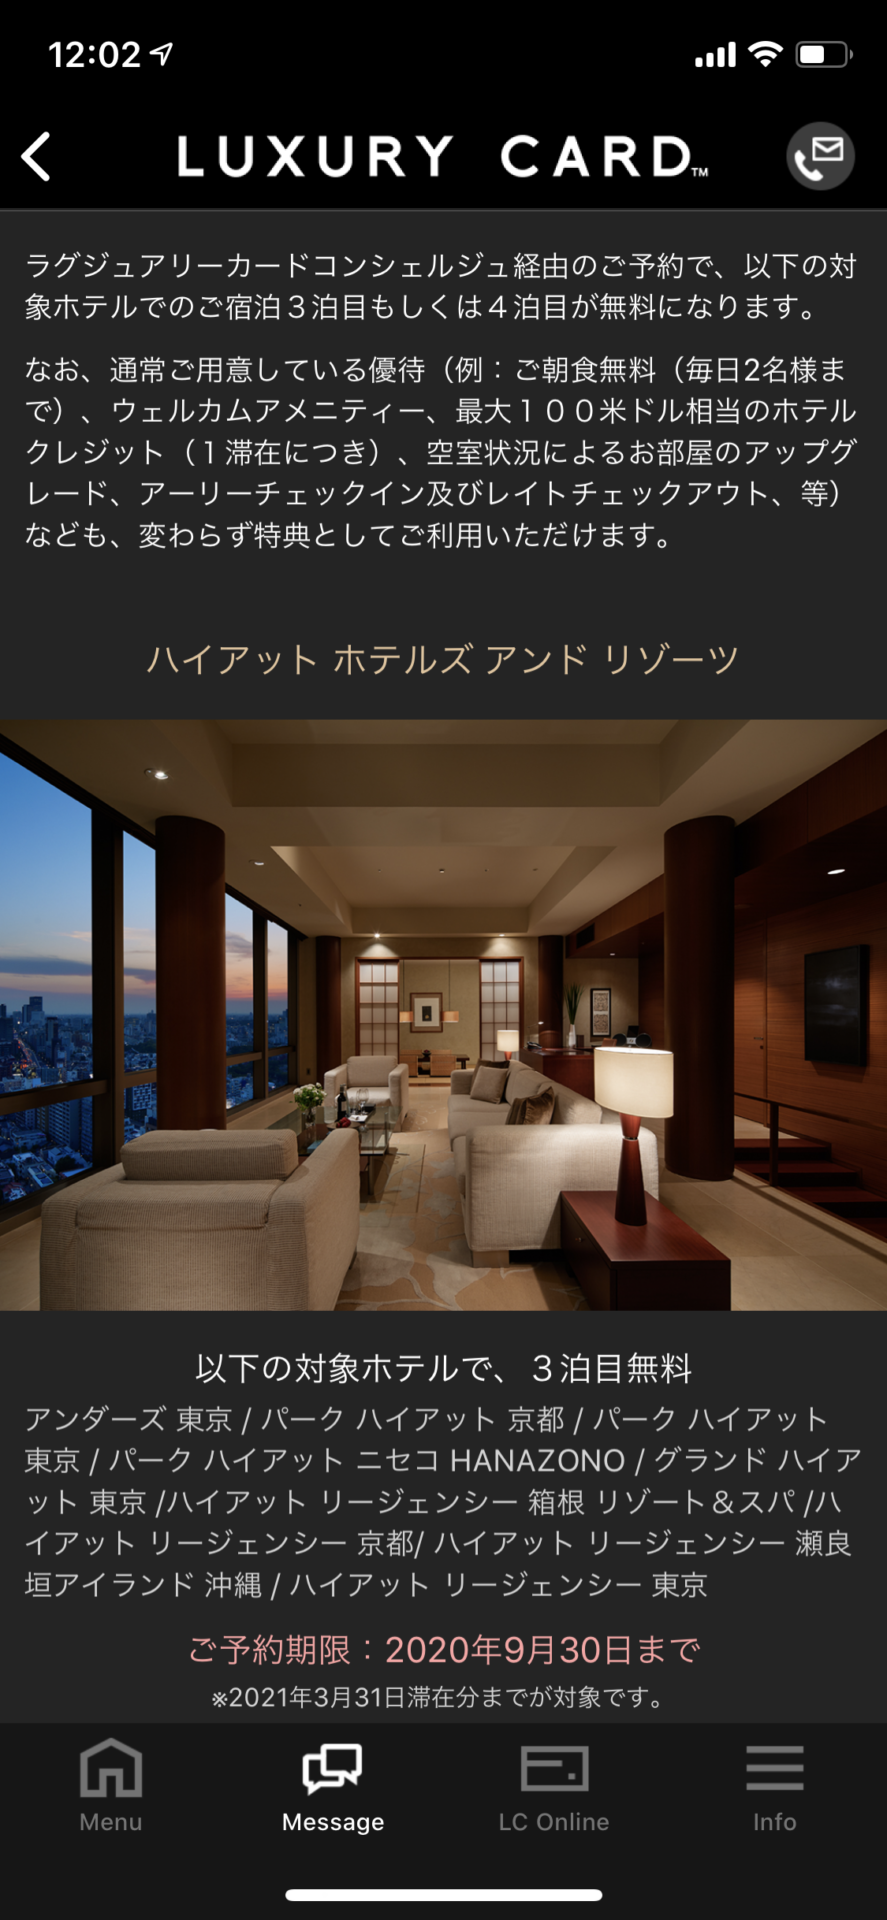 ラグジュアリカードの高級ホテル3泊目無料キャンペーン (3)